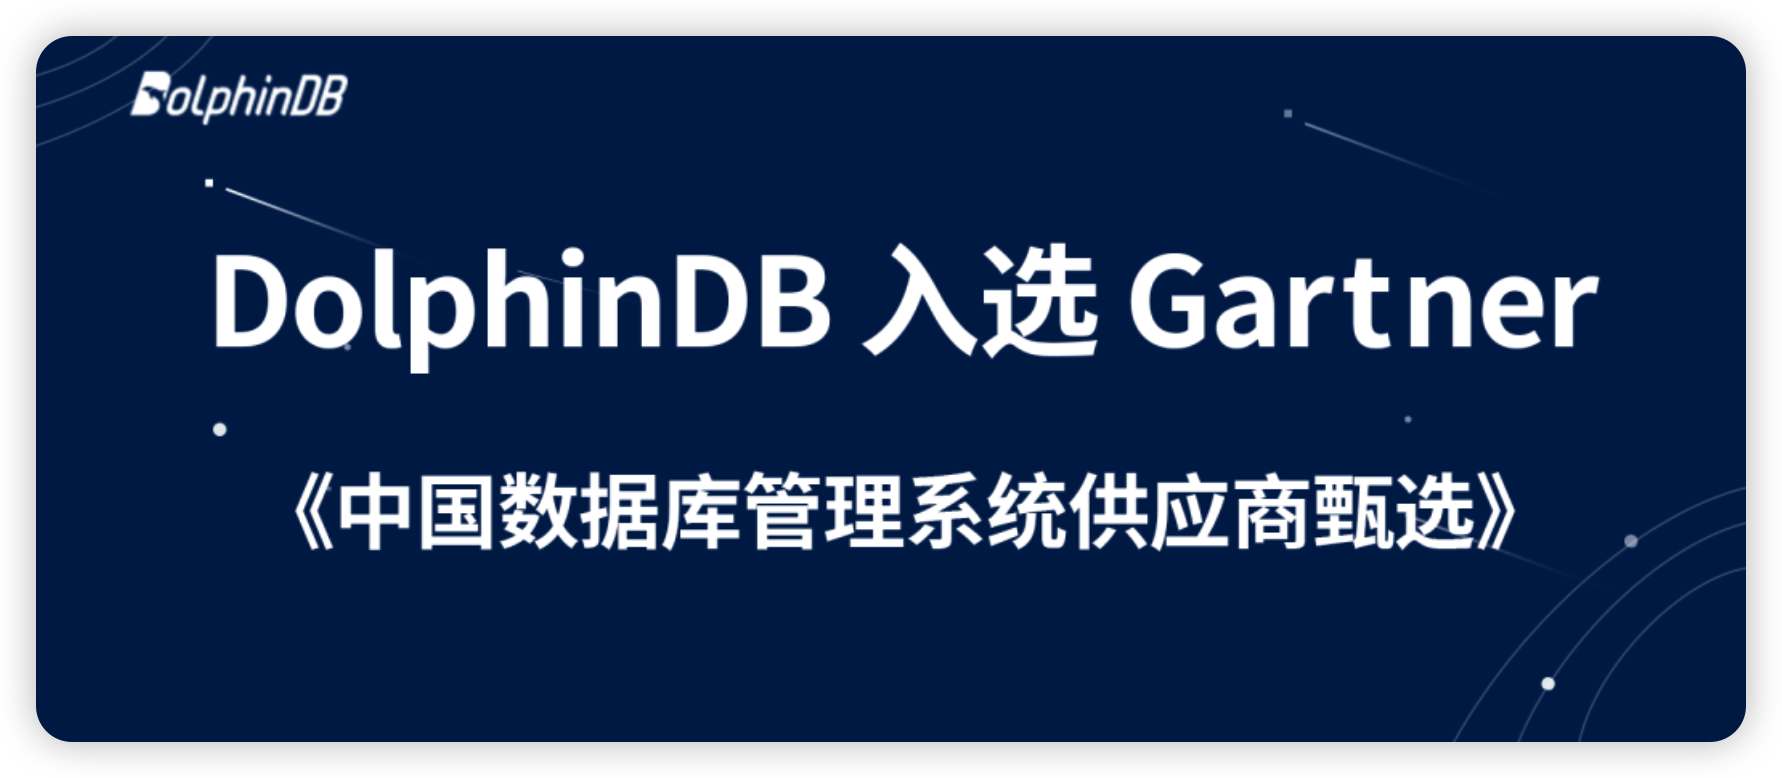 权威认可 | DolphinDB 入选 Gartner《中国数据库管理系统供应商甄选》